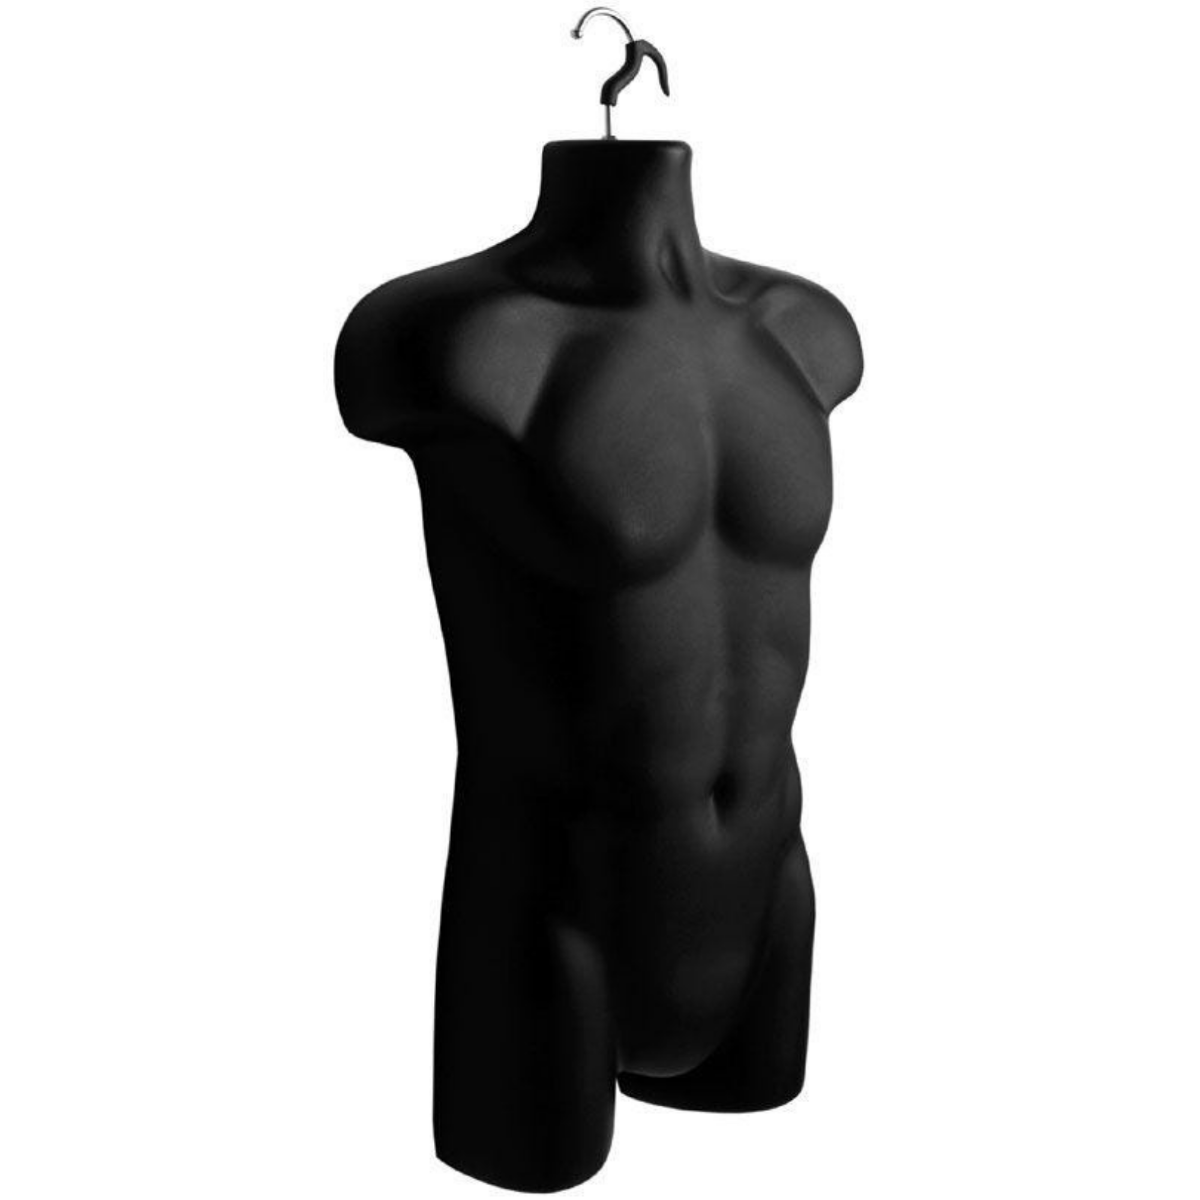 Male Hanging Torso Form - Black